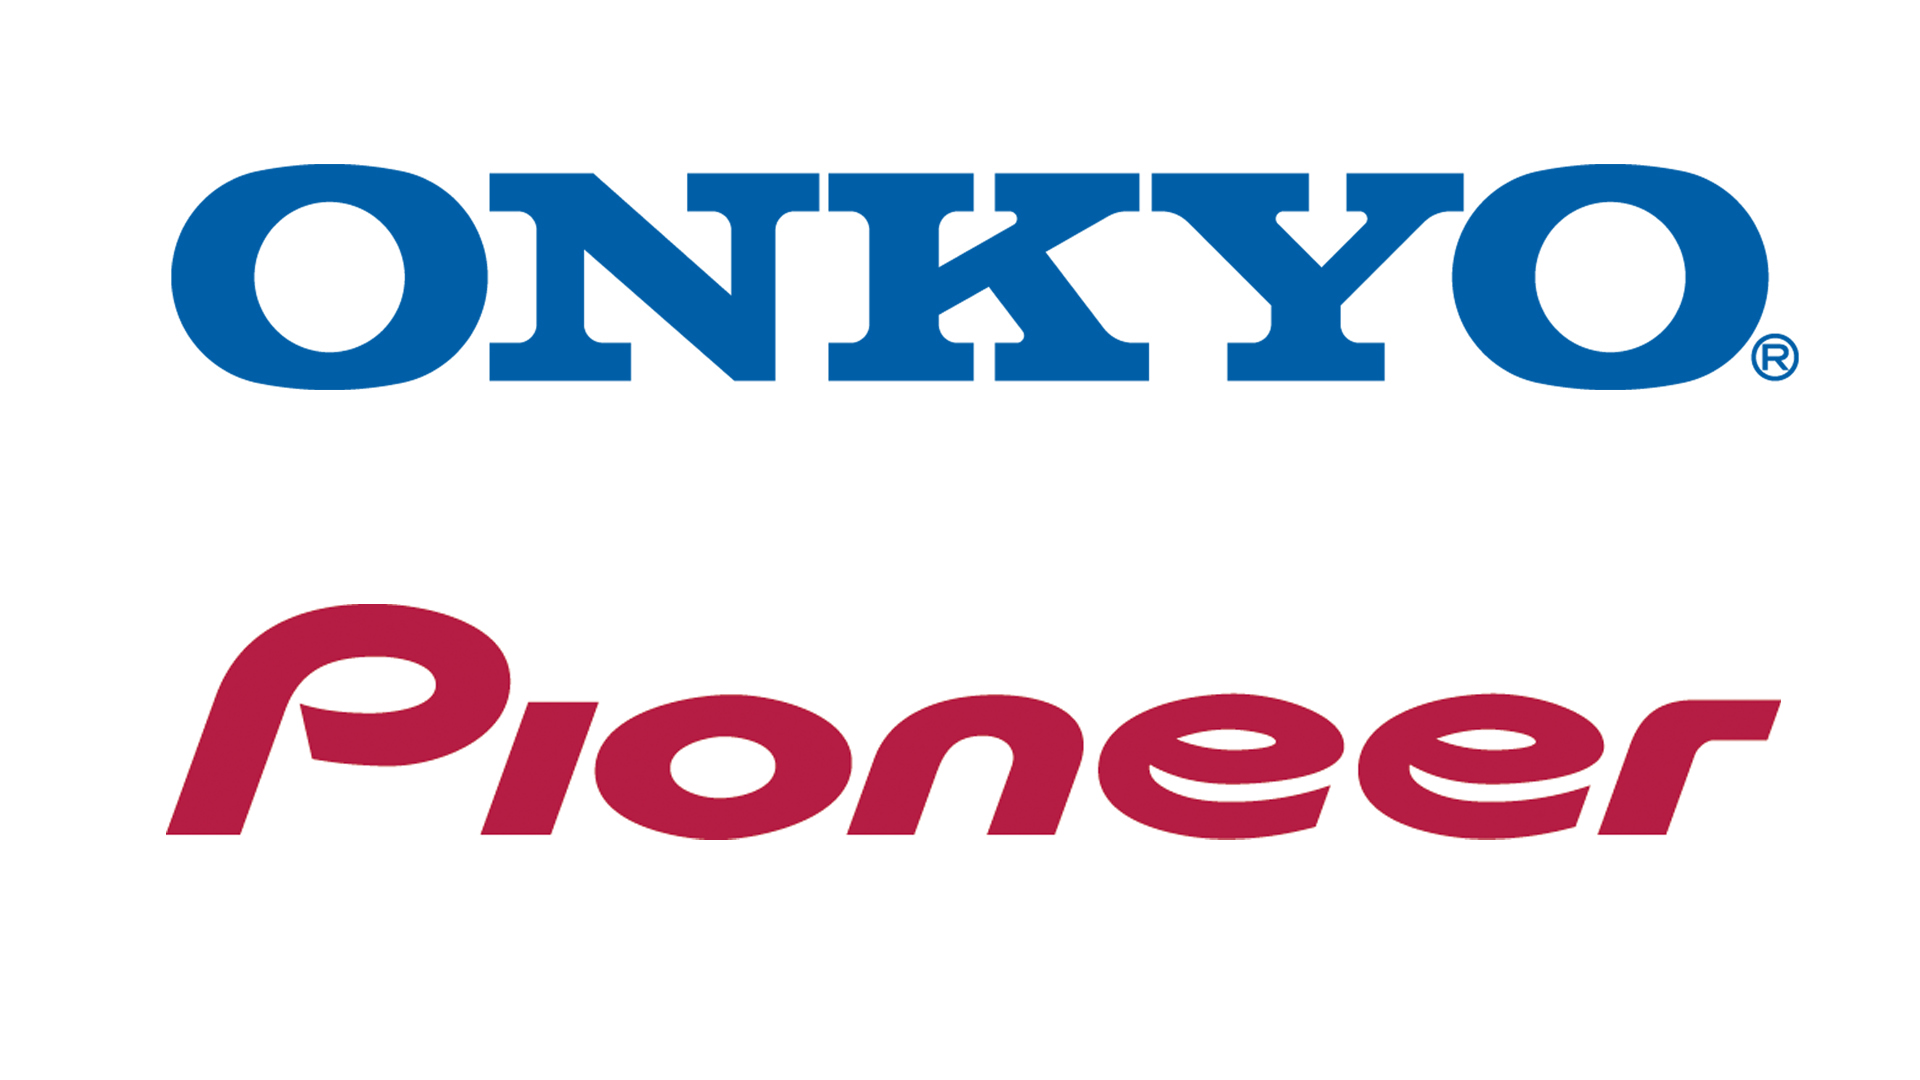 Onkyo und Pioneer gehören jetzt zu Voxx